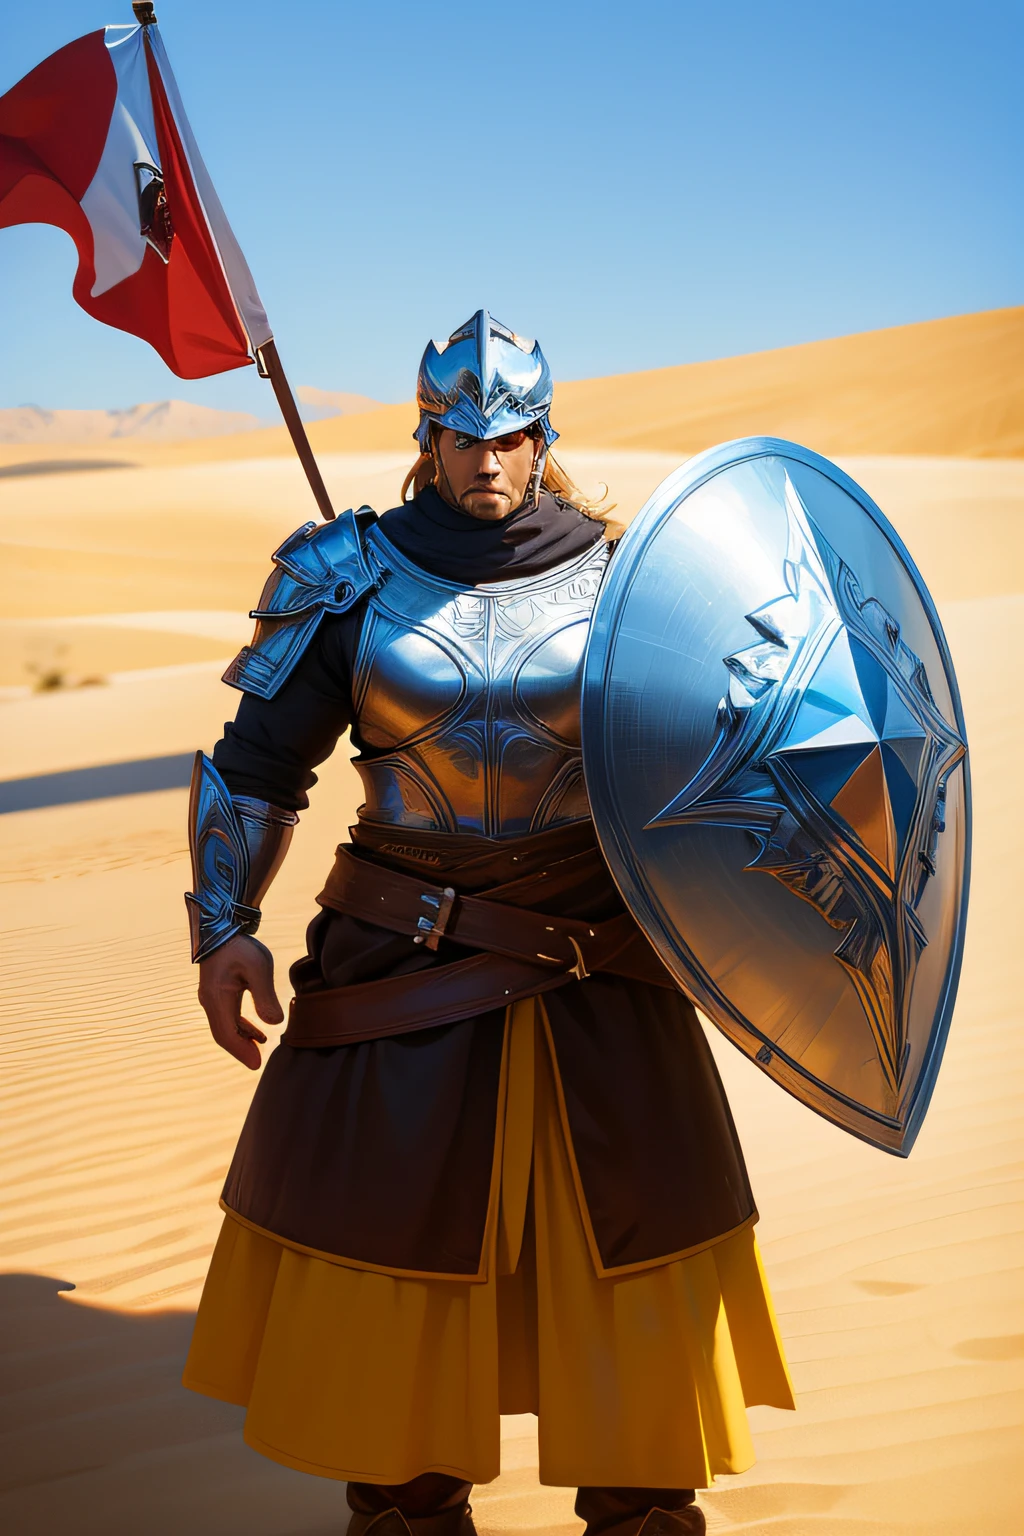 homem forte，Pegue um escudo，está vestido com armadura，usando seu capacete，em um deserto，A bandeira，Vento forte，cavalos